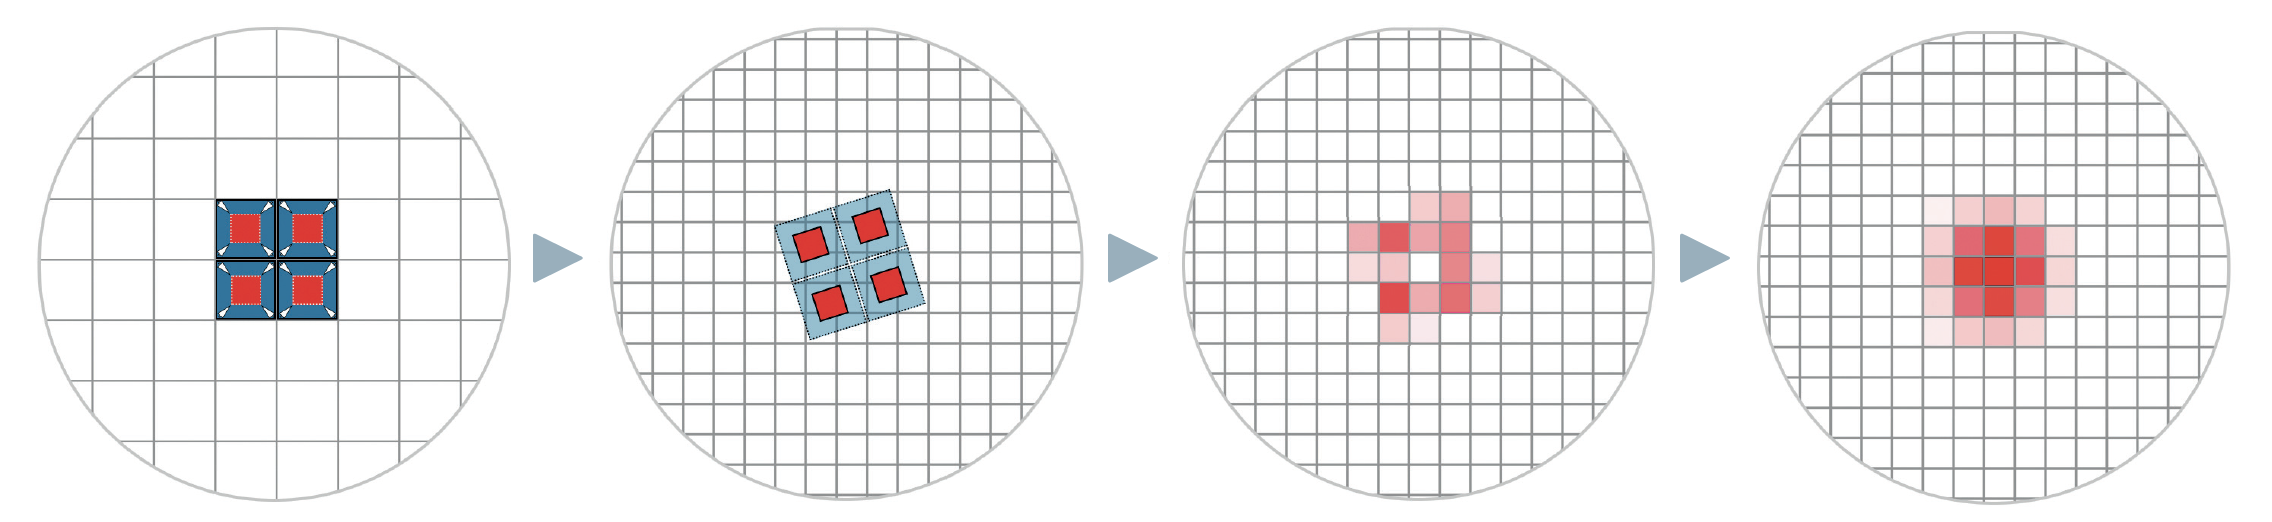 Zasada działania techniki drizzlingu: na zdjęciu po lewej gwiazda znalazła się dokładnie na przecięciu czterech pikseli, a jej wartości jasności zostały równomiernie rozłożone między pikselami. Sprawia to, że gwiazda wygląda na rozpikselowaną, a jej rzeczywisty profil nie jest odwzorowany. Oryginalna siatka pikseli zdjęcia (kolor niebieski) jest teraz zmniejszana (kolor czerwony) i rzutowana na nową siatkę (drugi obraz). Nowa siatka jest tu drobniejsza o współczynnik 2. Przy tylko jednej klatce, w niektórych miejscach powstają oczywiście luki, co widać na wynikowym rozkładzie wartości na trzecim obrazie. Dlatego konieczne jest wykonanie wielu klatek z niewielkimi i różnymi przesunięciami. Po ich uśrednieniu profil gwiazdy jest teraz, w idealnym przypadku, lepiej odwzorowany (obraz po prawej). M. Weigand